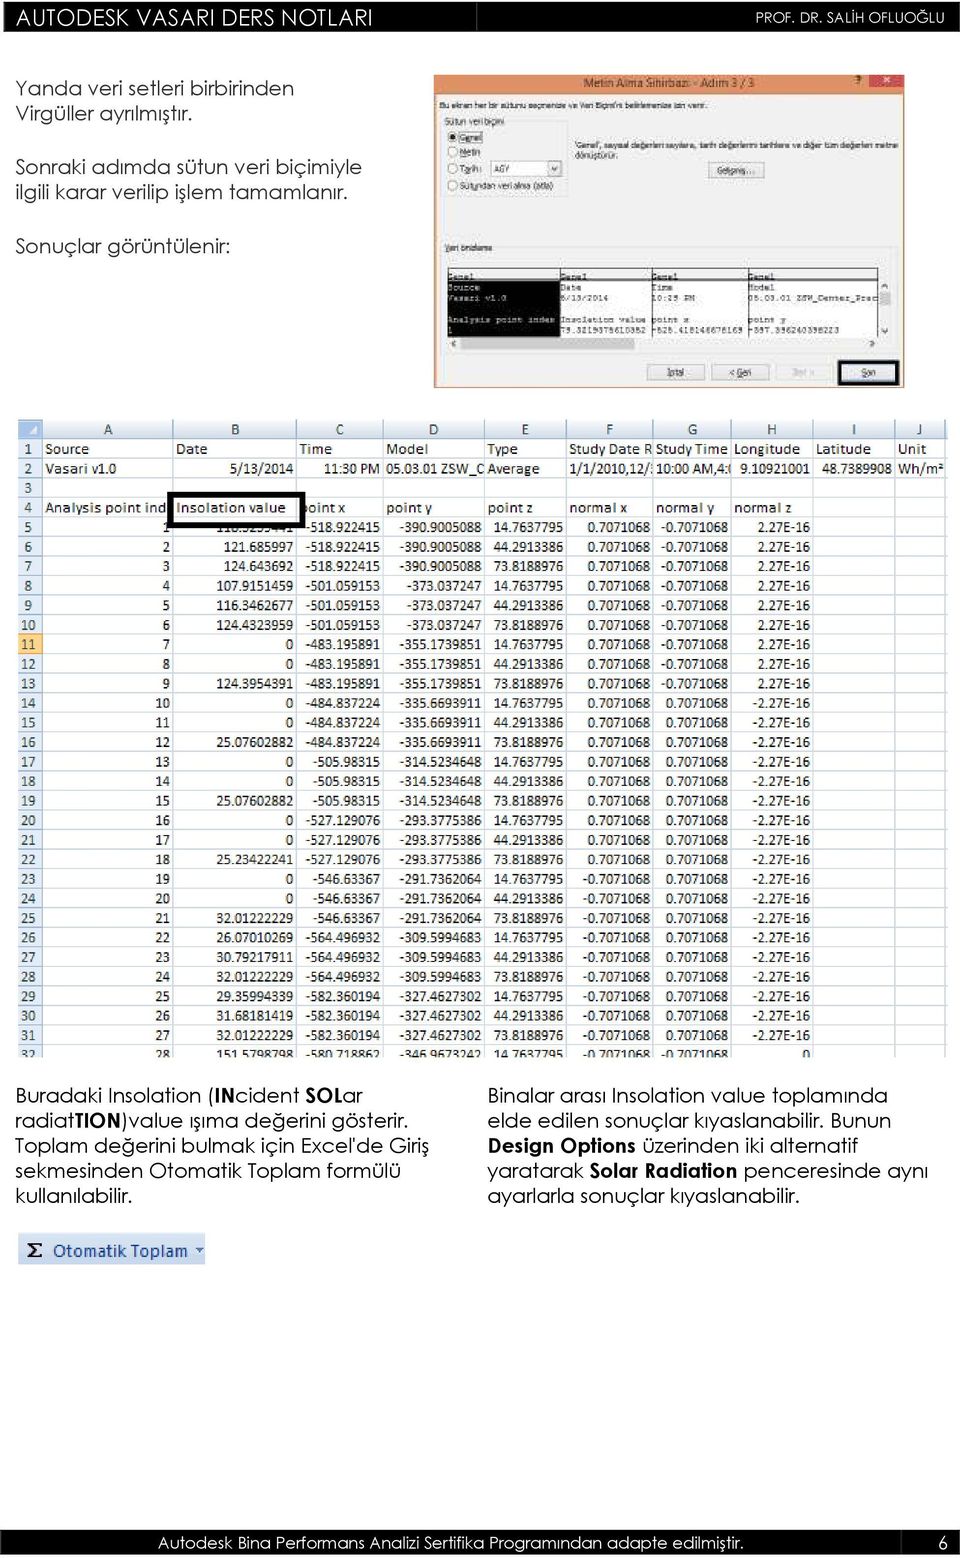 Toplam değerini bulmak için Excel'de Giriş sekmesinden Otomatik Toplam formülü kullanılabilir.